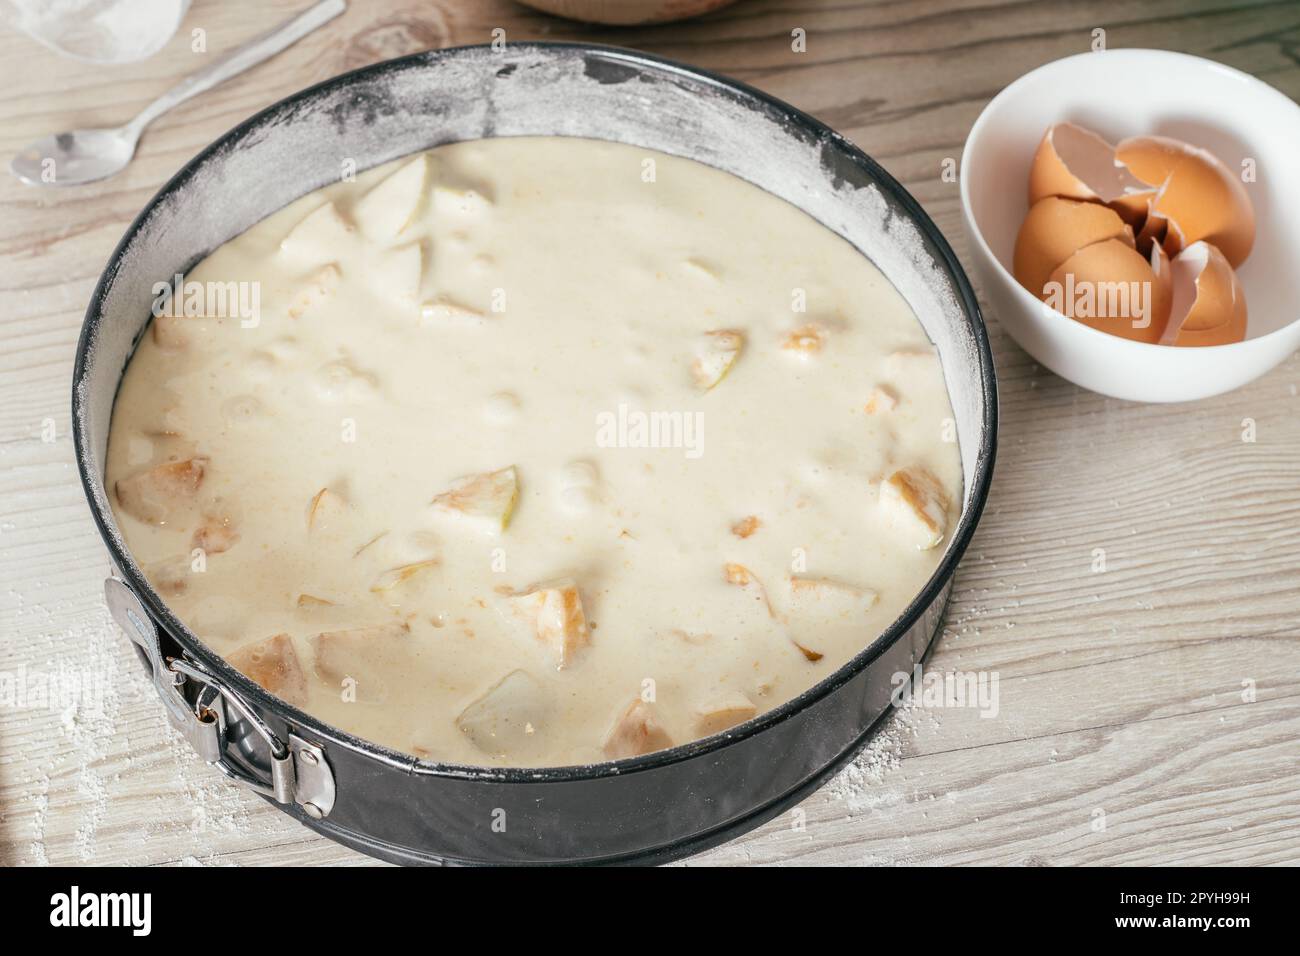 Il piatto da forno con impasto crudo di torta di mele si trova sul bancone della cucina accanto al recipiente con gusci d'uovo Foto Stock